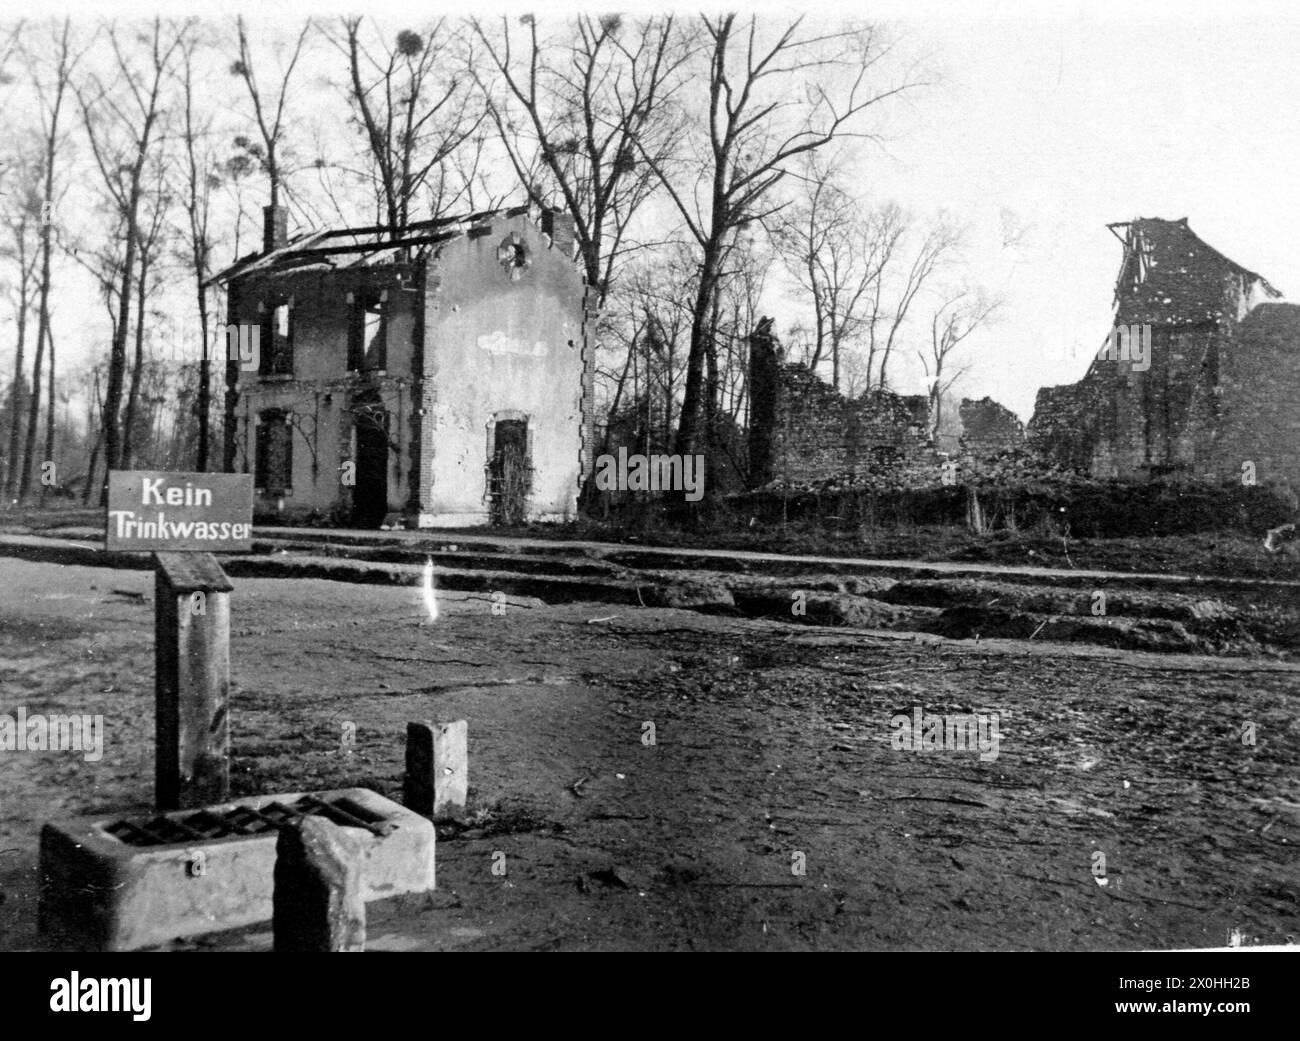 Ein Schild mit der Aufschrift 'Kein Trinkwasser' vor zerstörten Häusern a Craonne in Frankreich während des ersten Weltkrieges. (Aufnahmedatum: 01.01.1914-31.12.1914) Foto Stock